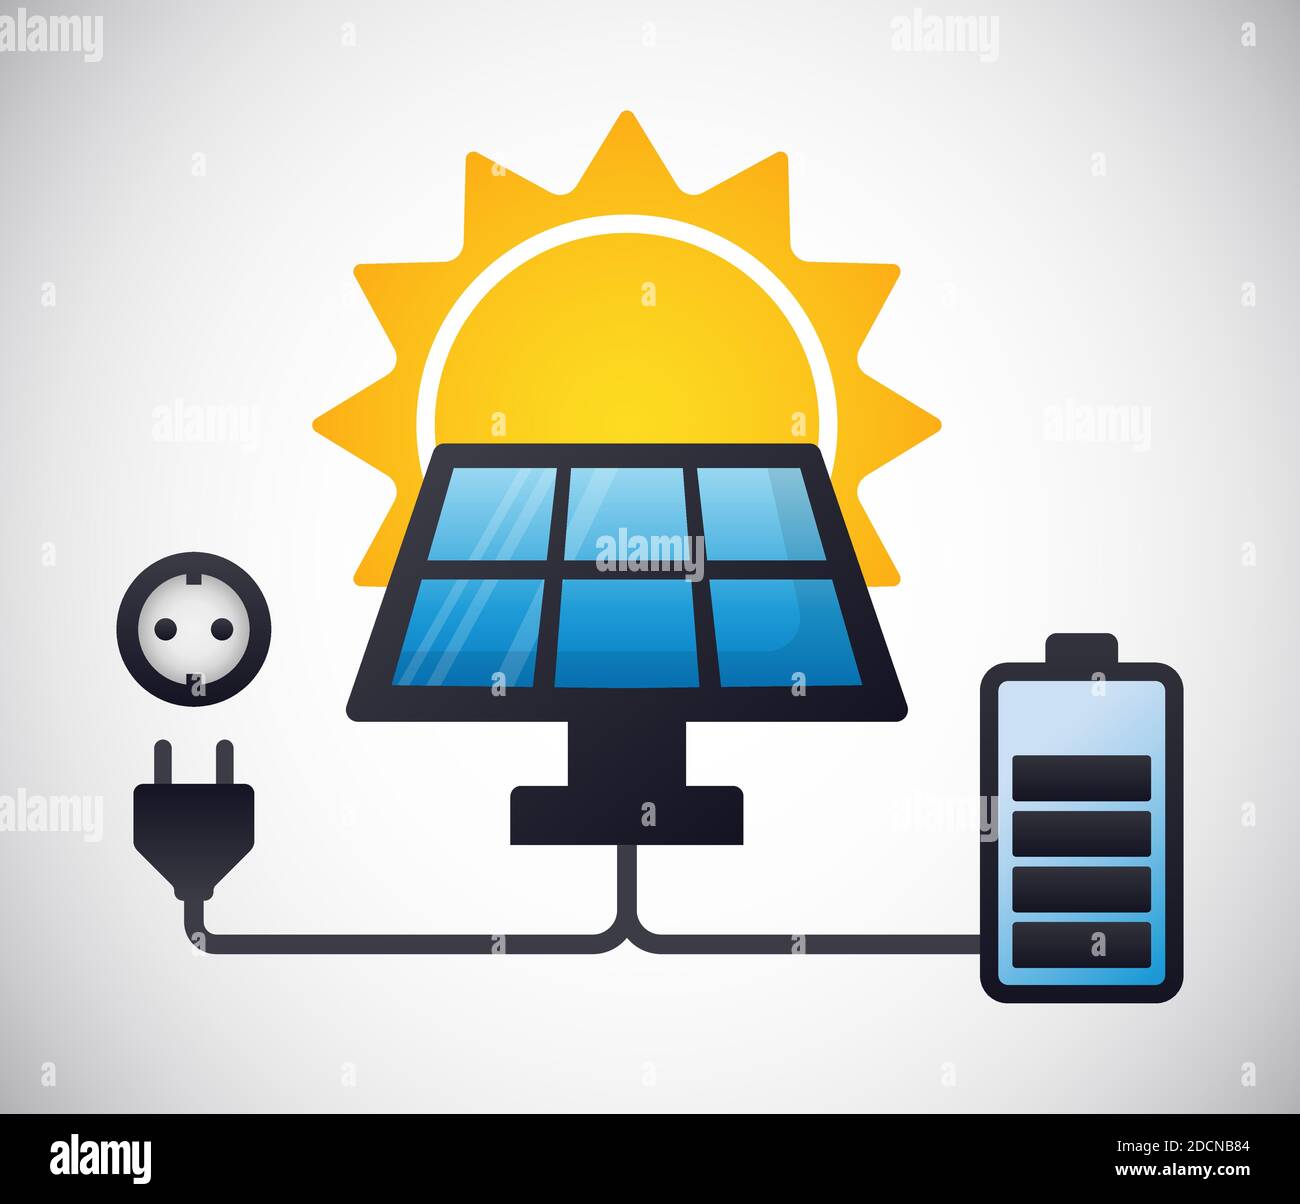 Il pannello energia solare sta caricando una batteria e un'alimentazione alternativa illustrazione vettoriale colorata del concetto plug Illustrazione Vettoriale